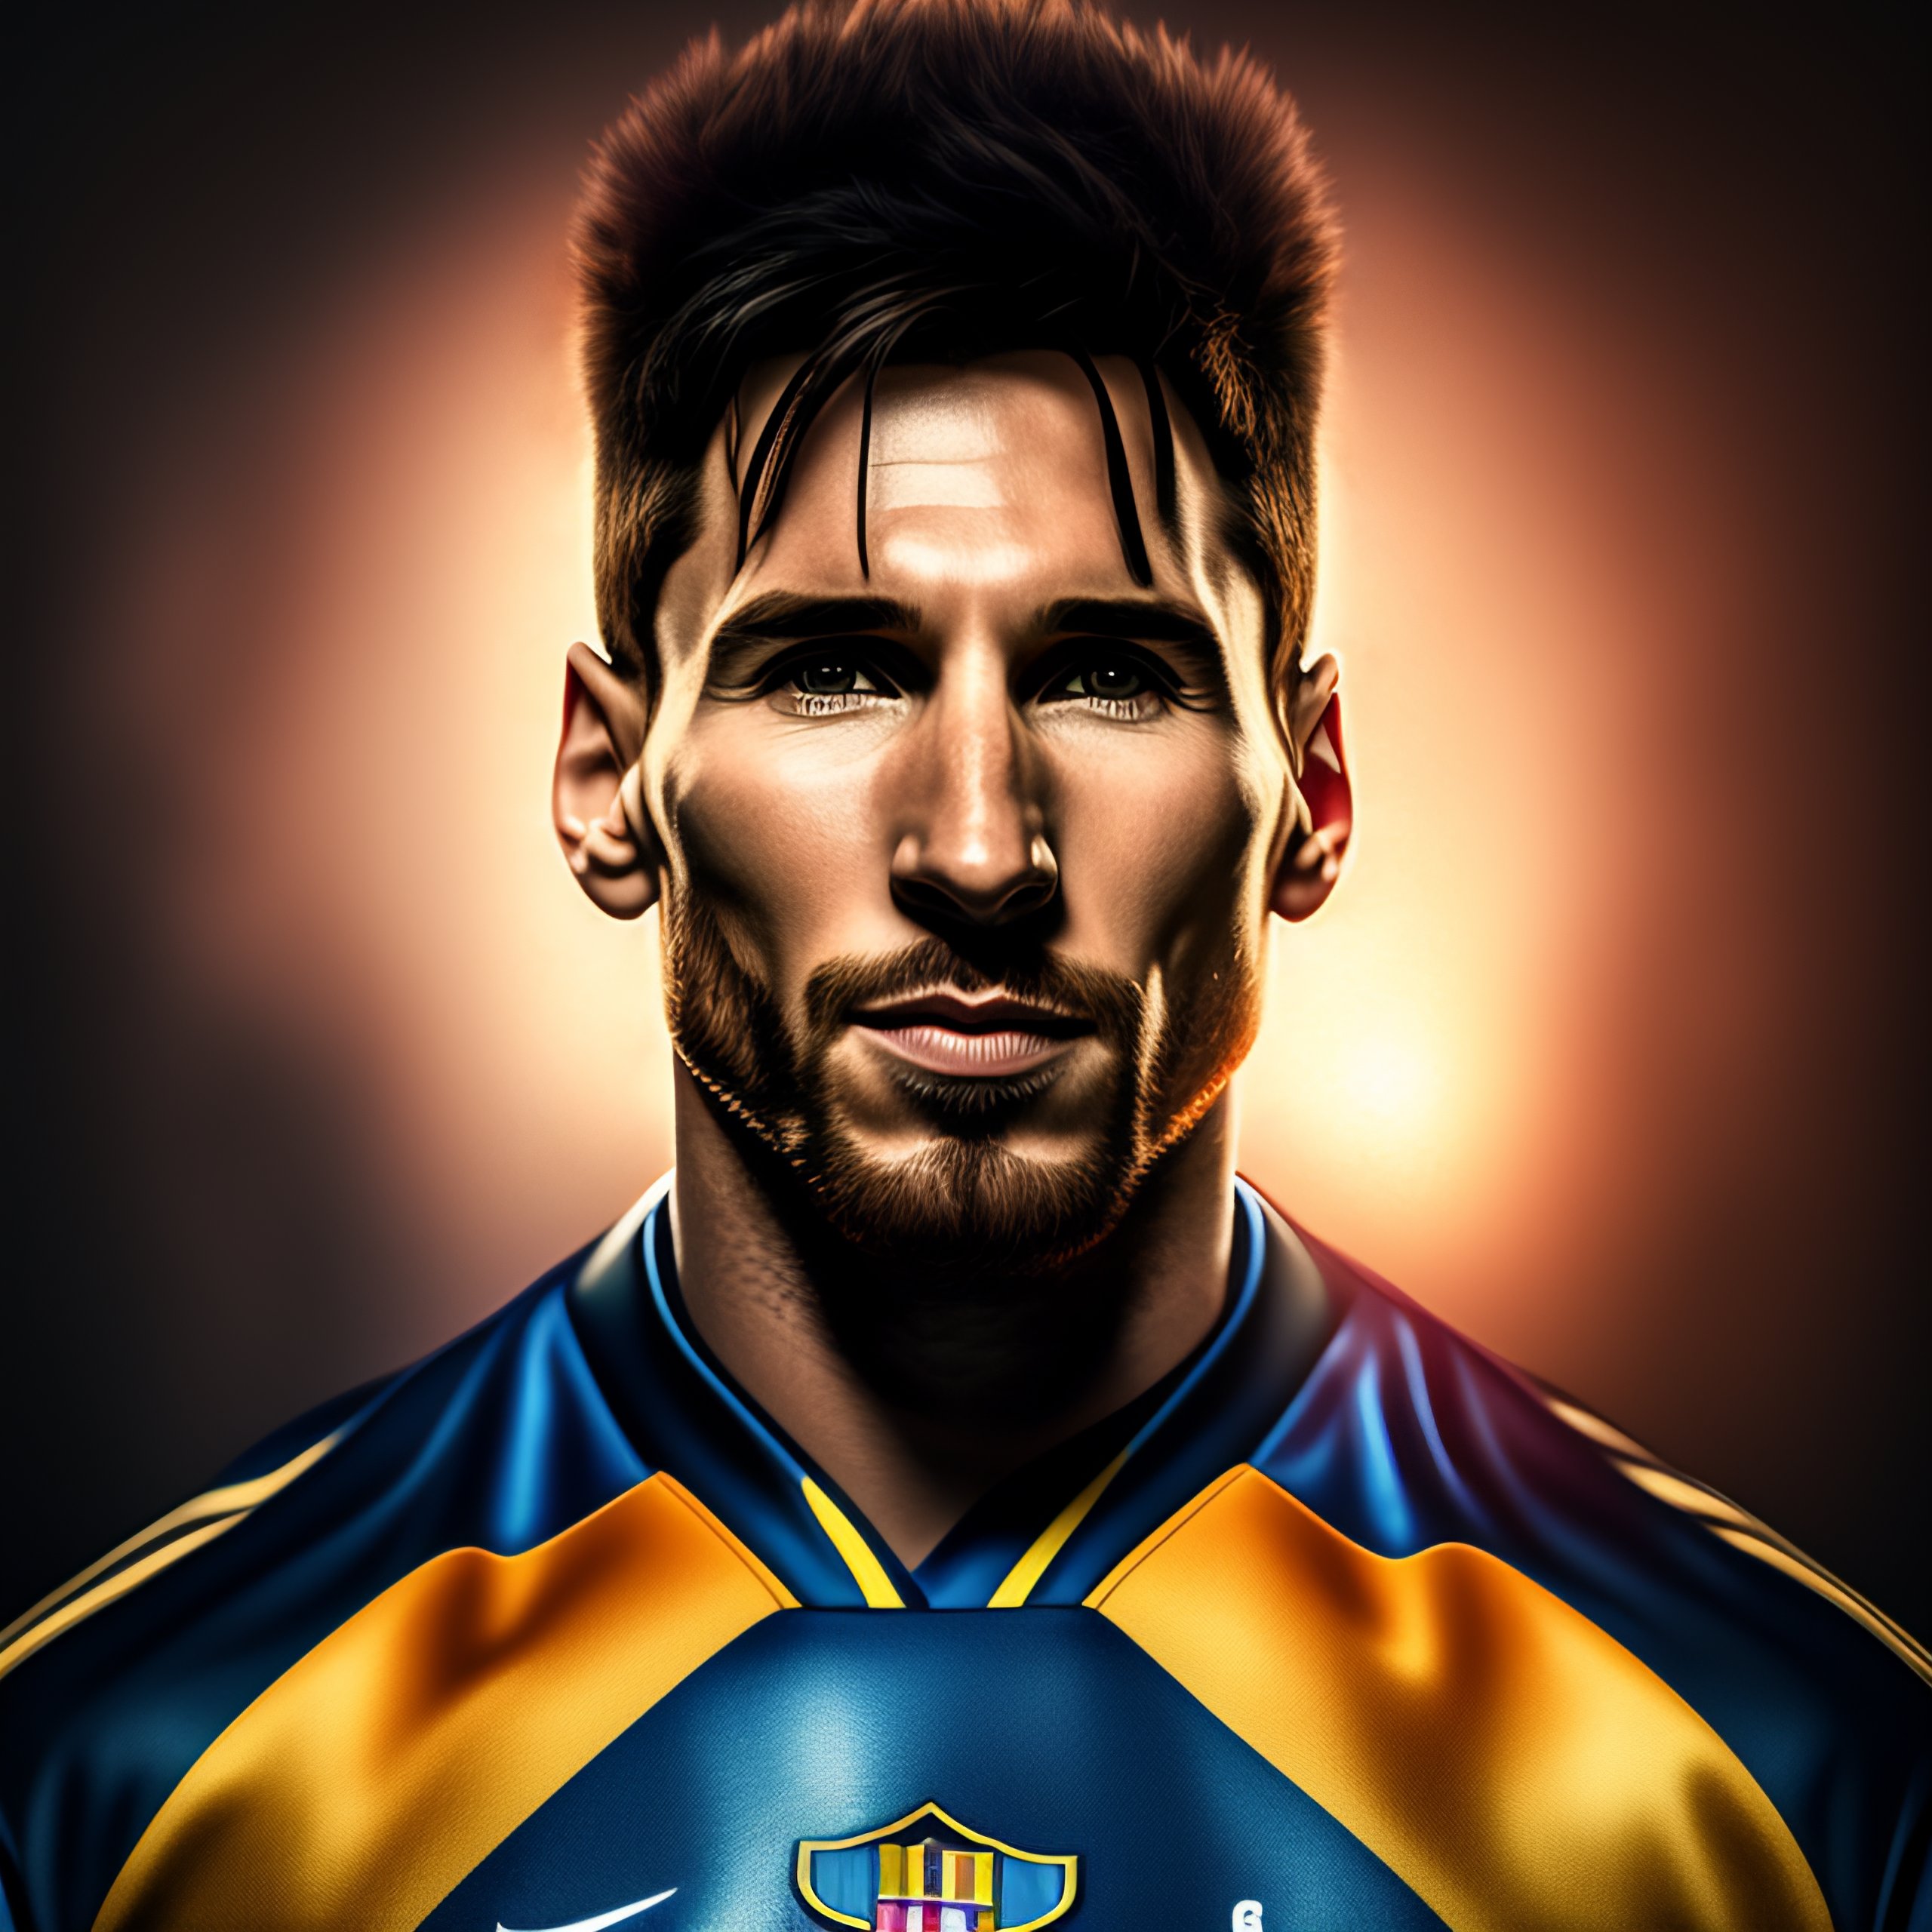 Nghệ thuật chân dung của Lionel Messi - hãy chiêm ngưỡng những bức ảnh chân dung cao cấp và độc đáo của Messi, vô cùng đẹp và ấn tượng.